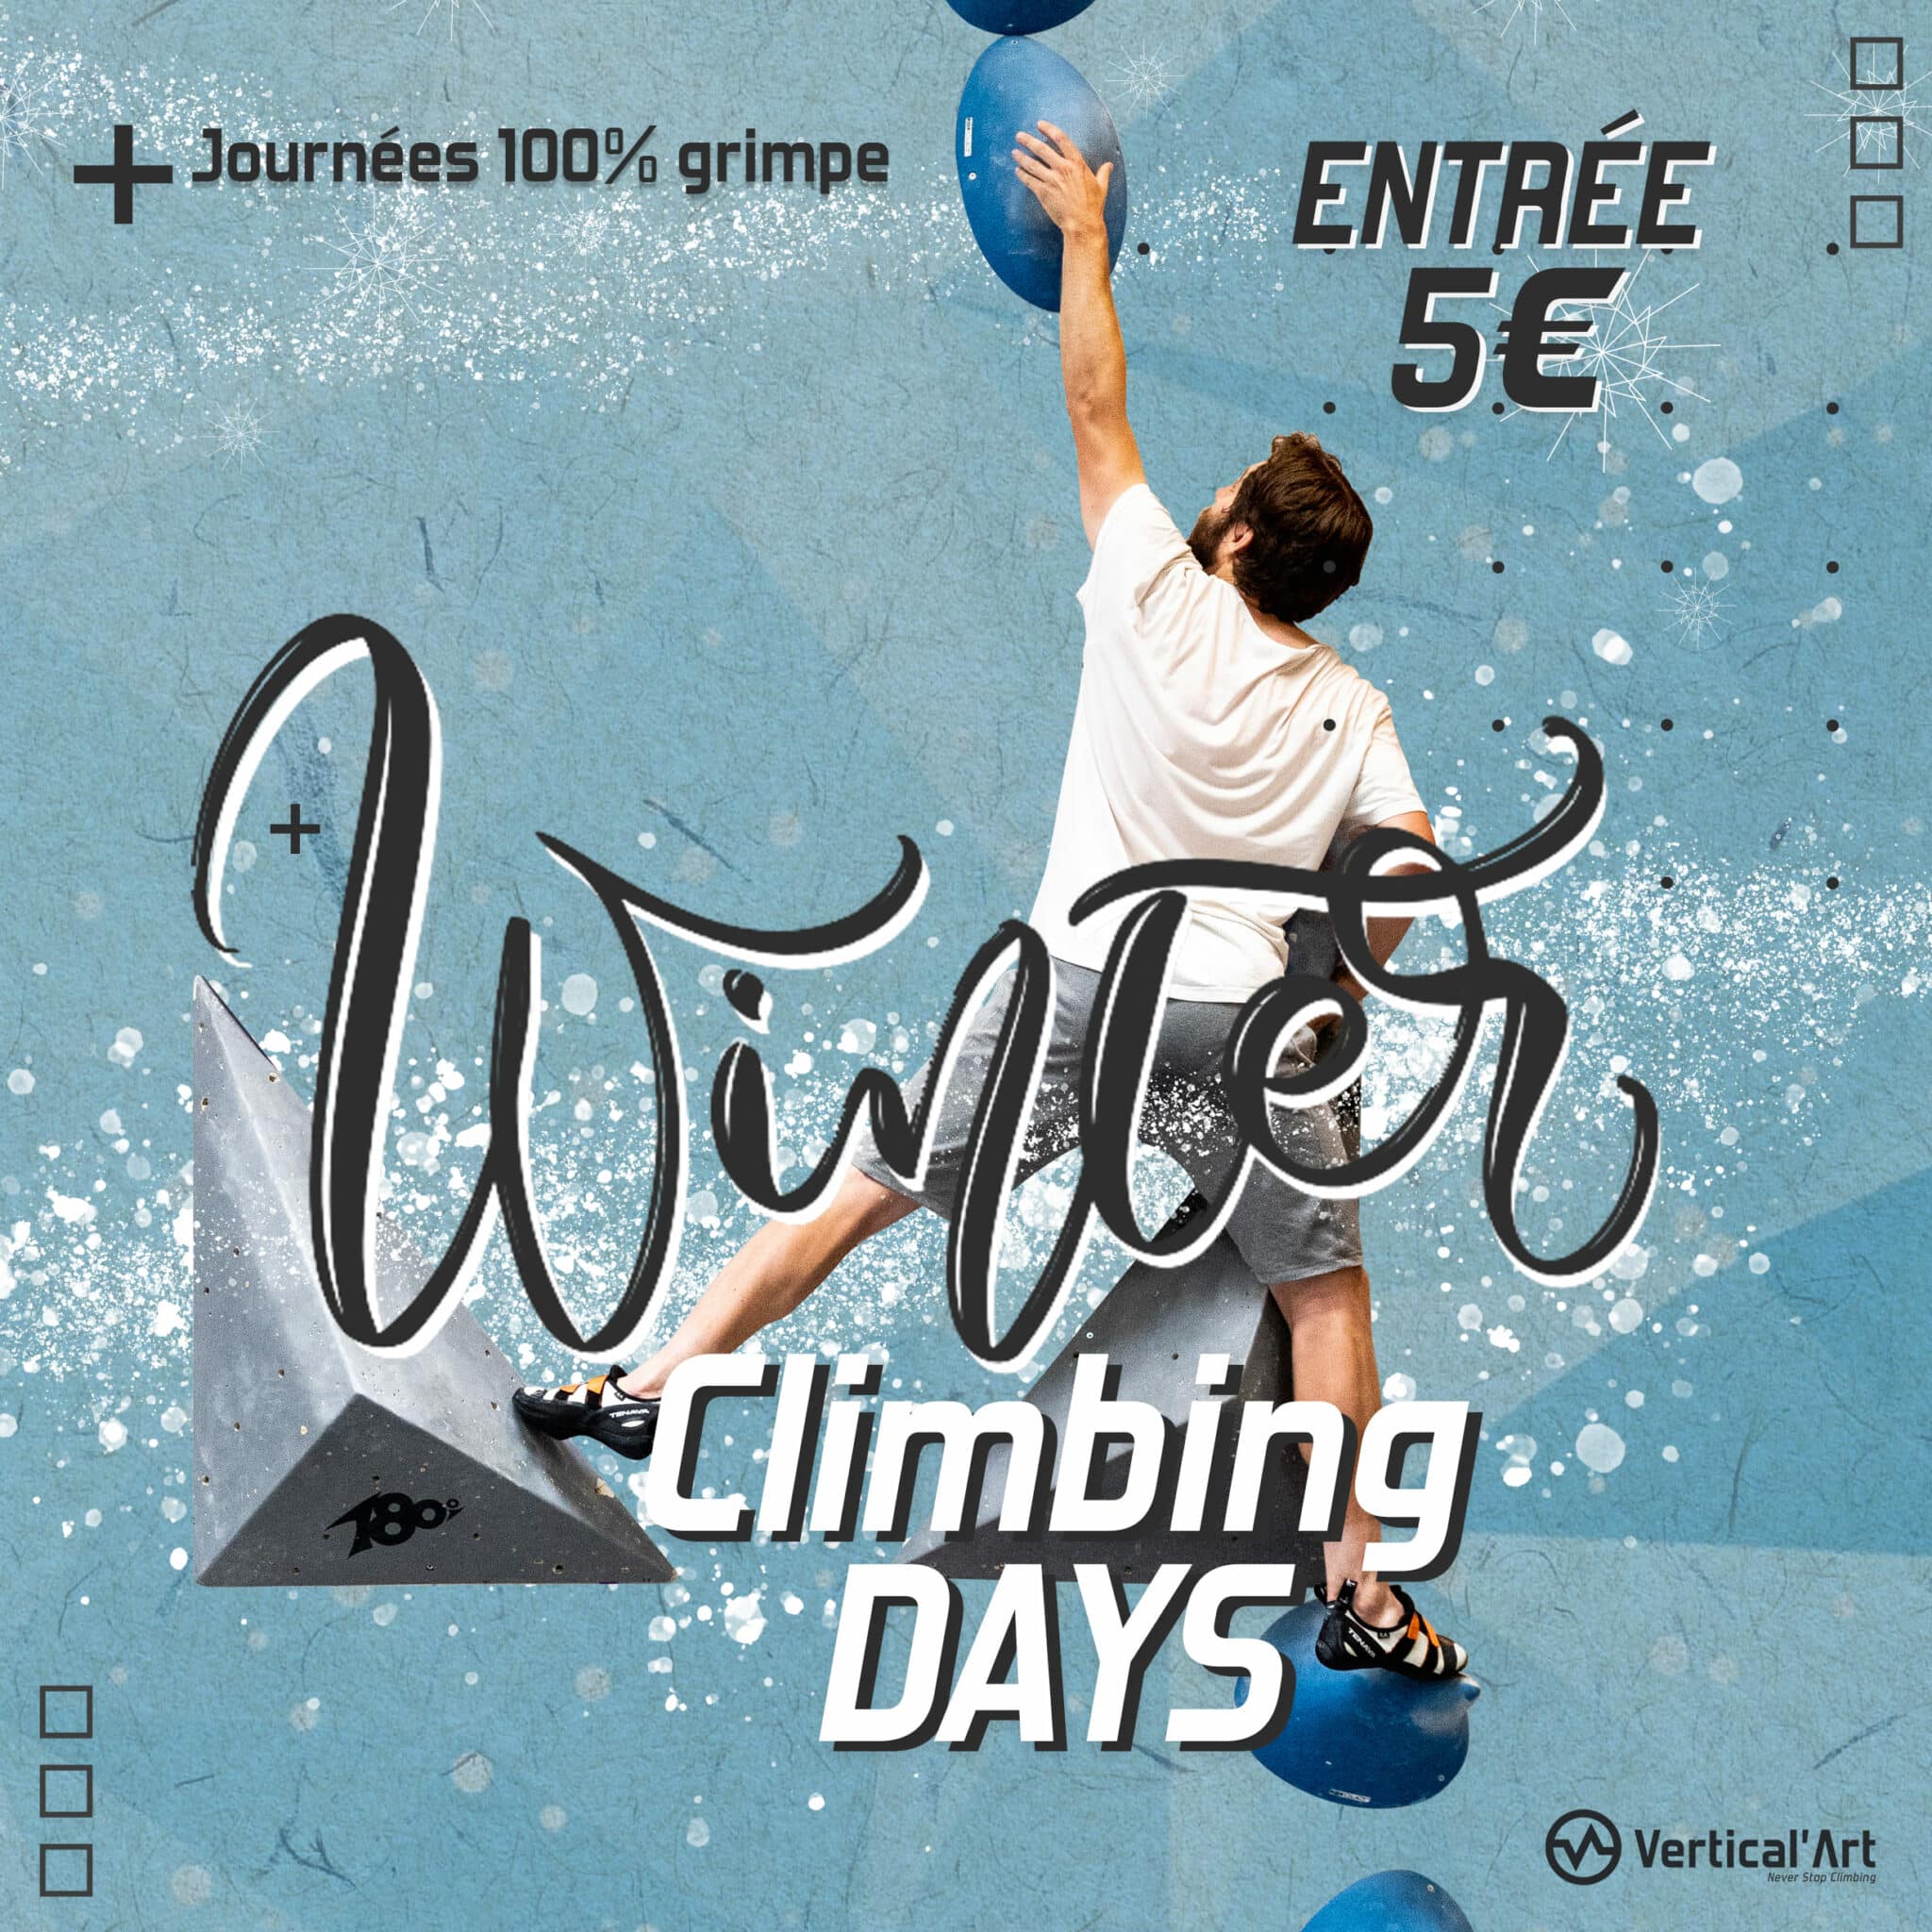 Winter Climbing Days à Vertical’Art SQY, escalade à 5€ pour tous pendant les vacances d'hiver